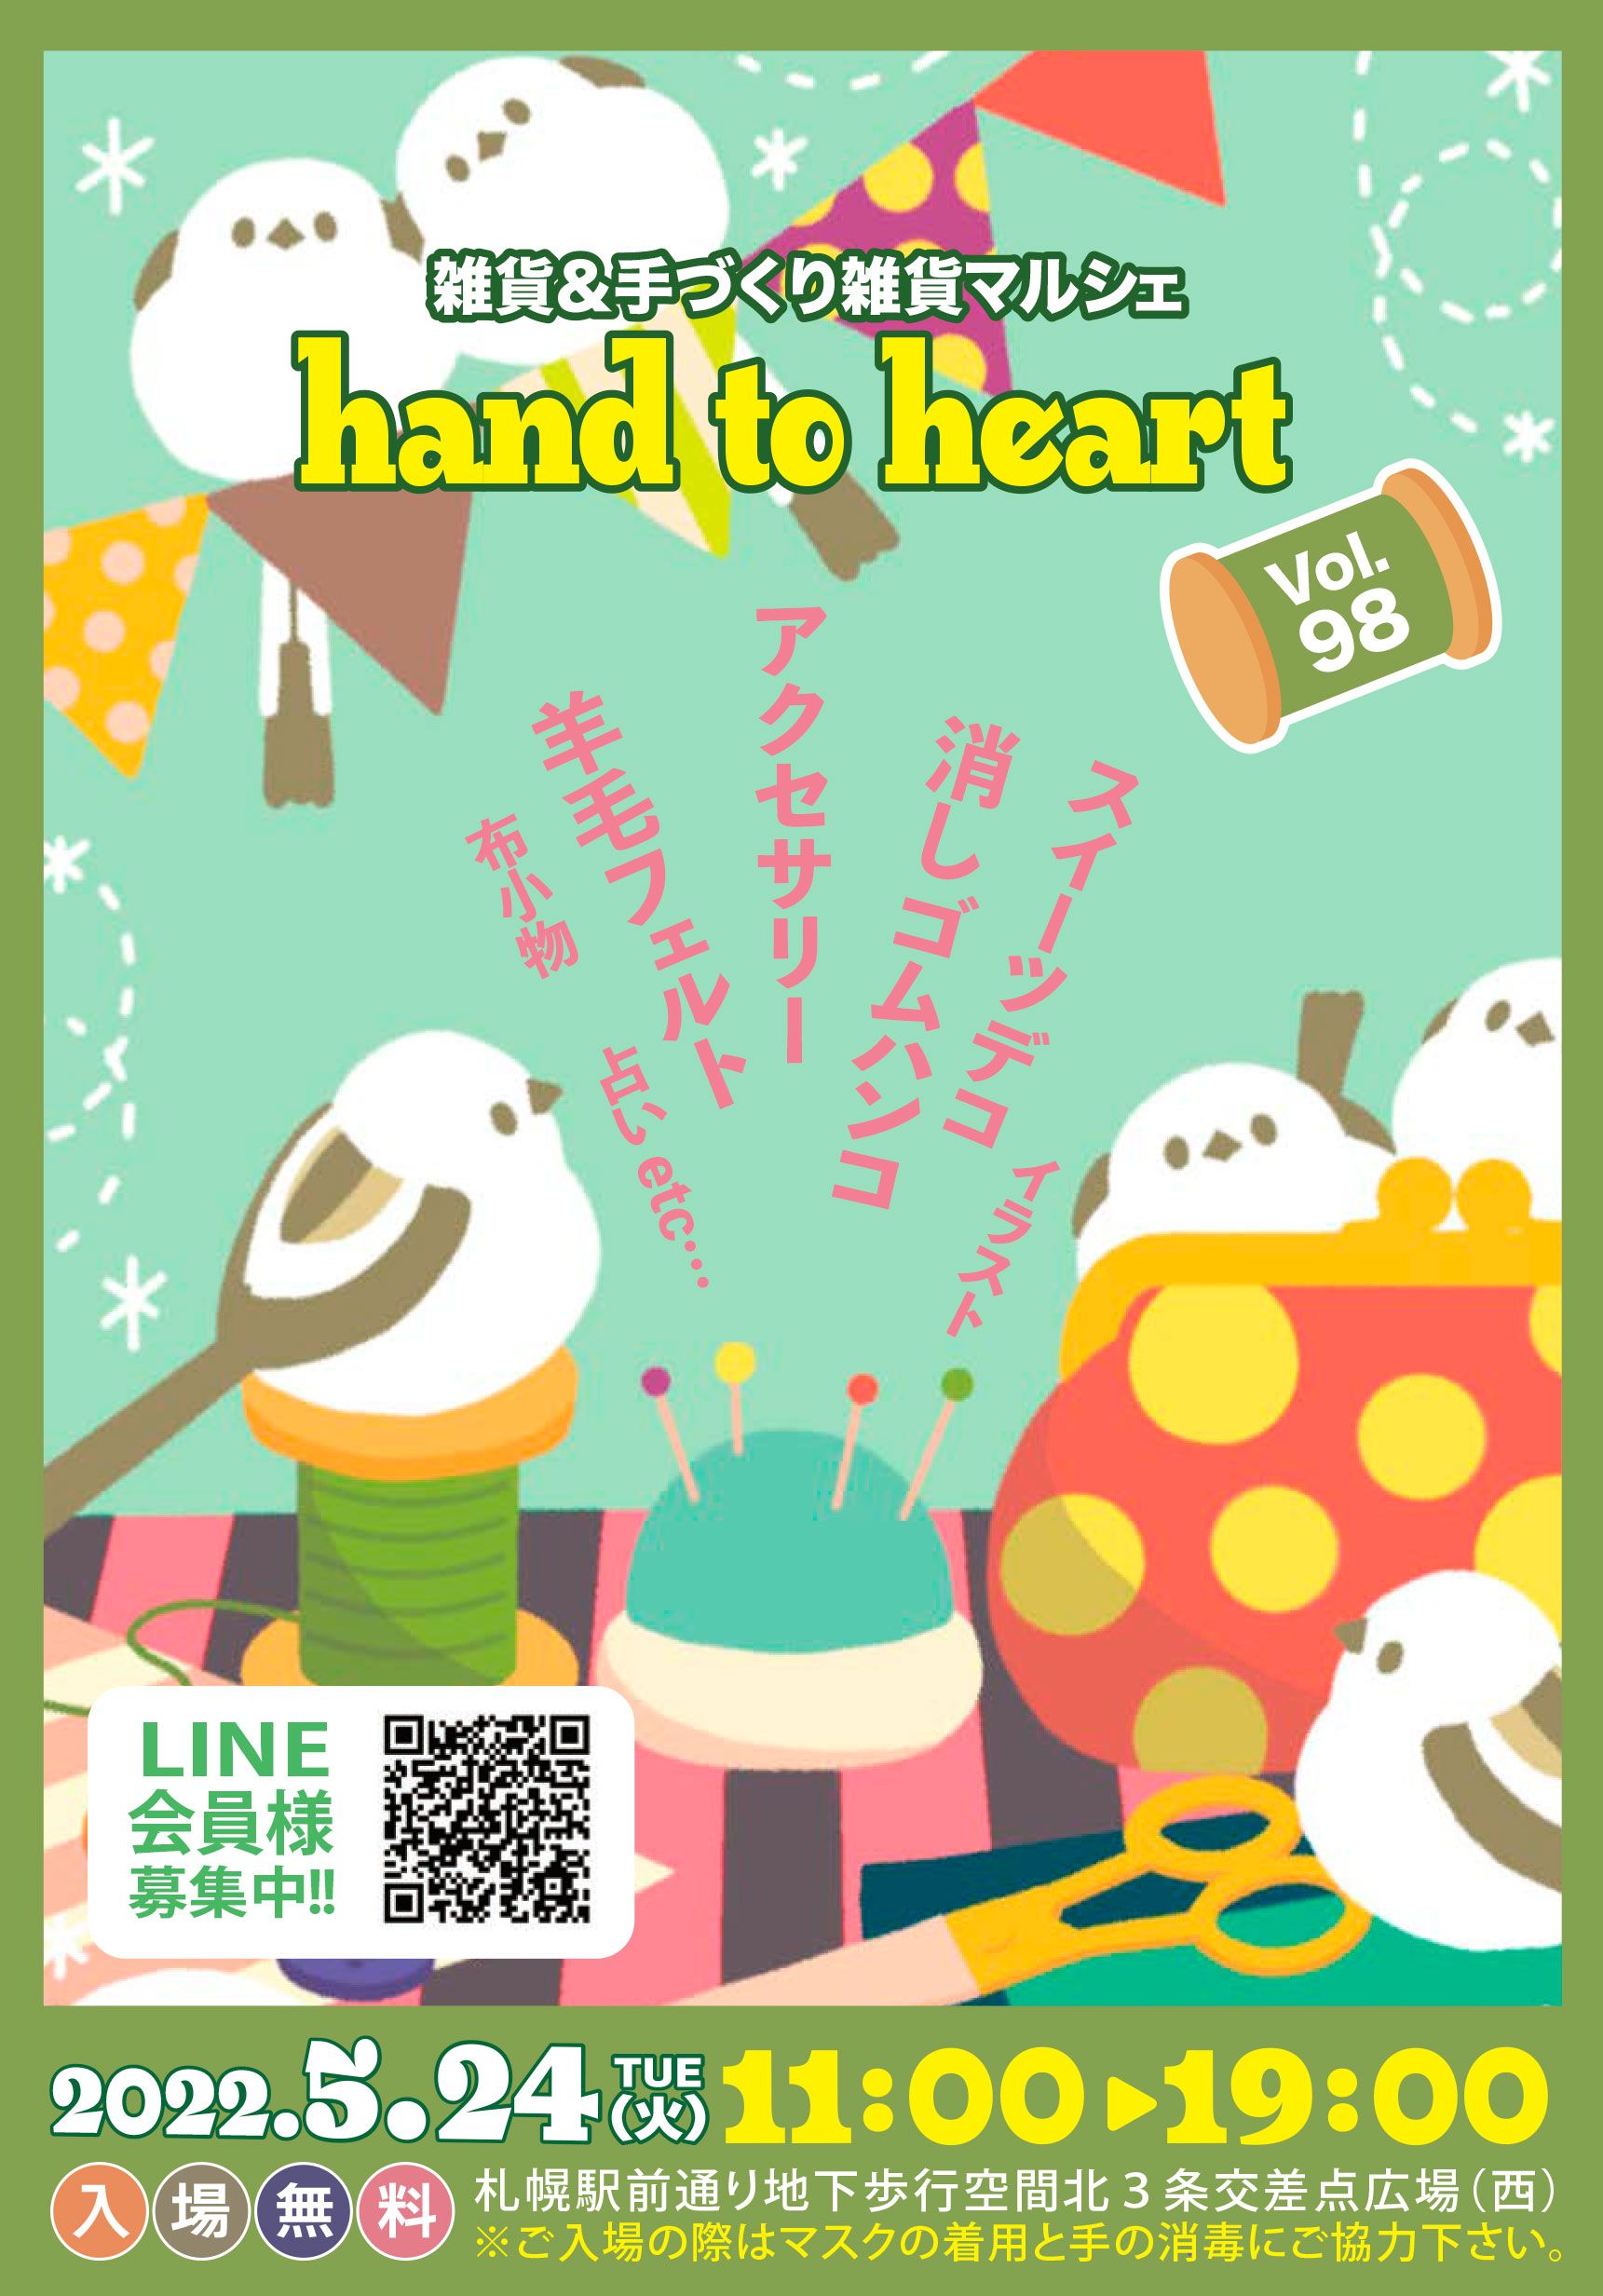 雑貨＆手づくり雑貨マルシェ hand to heart   vol.98